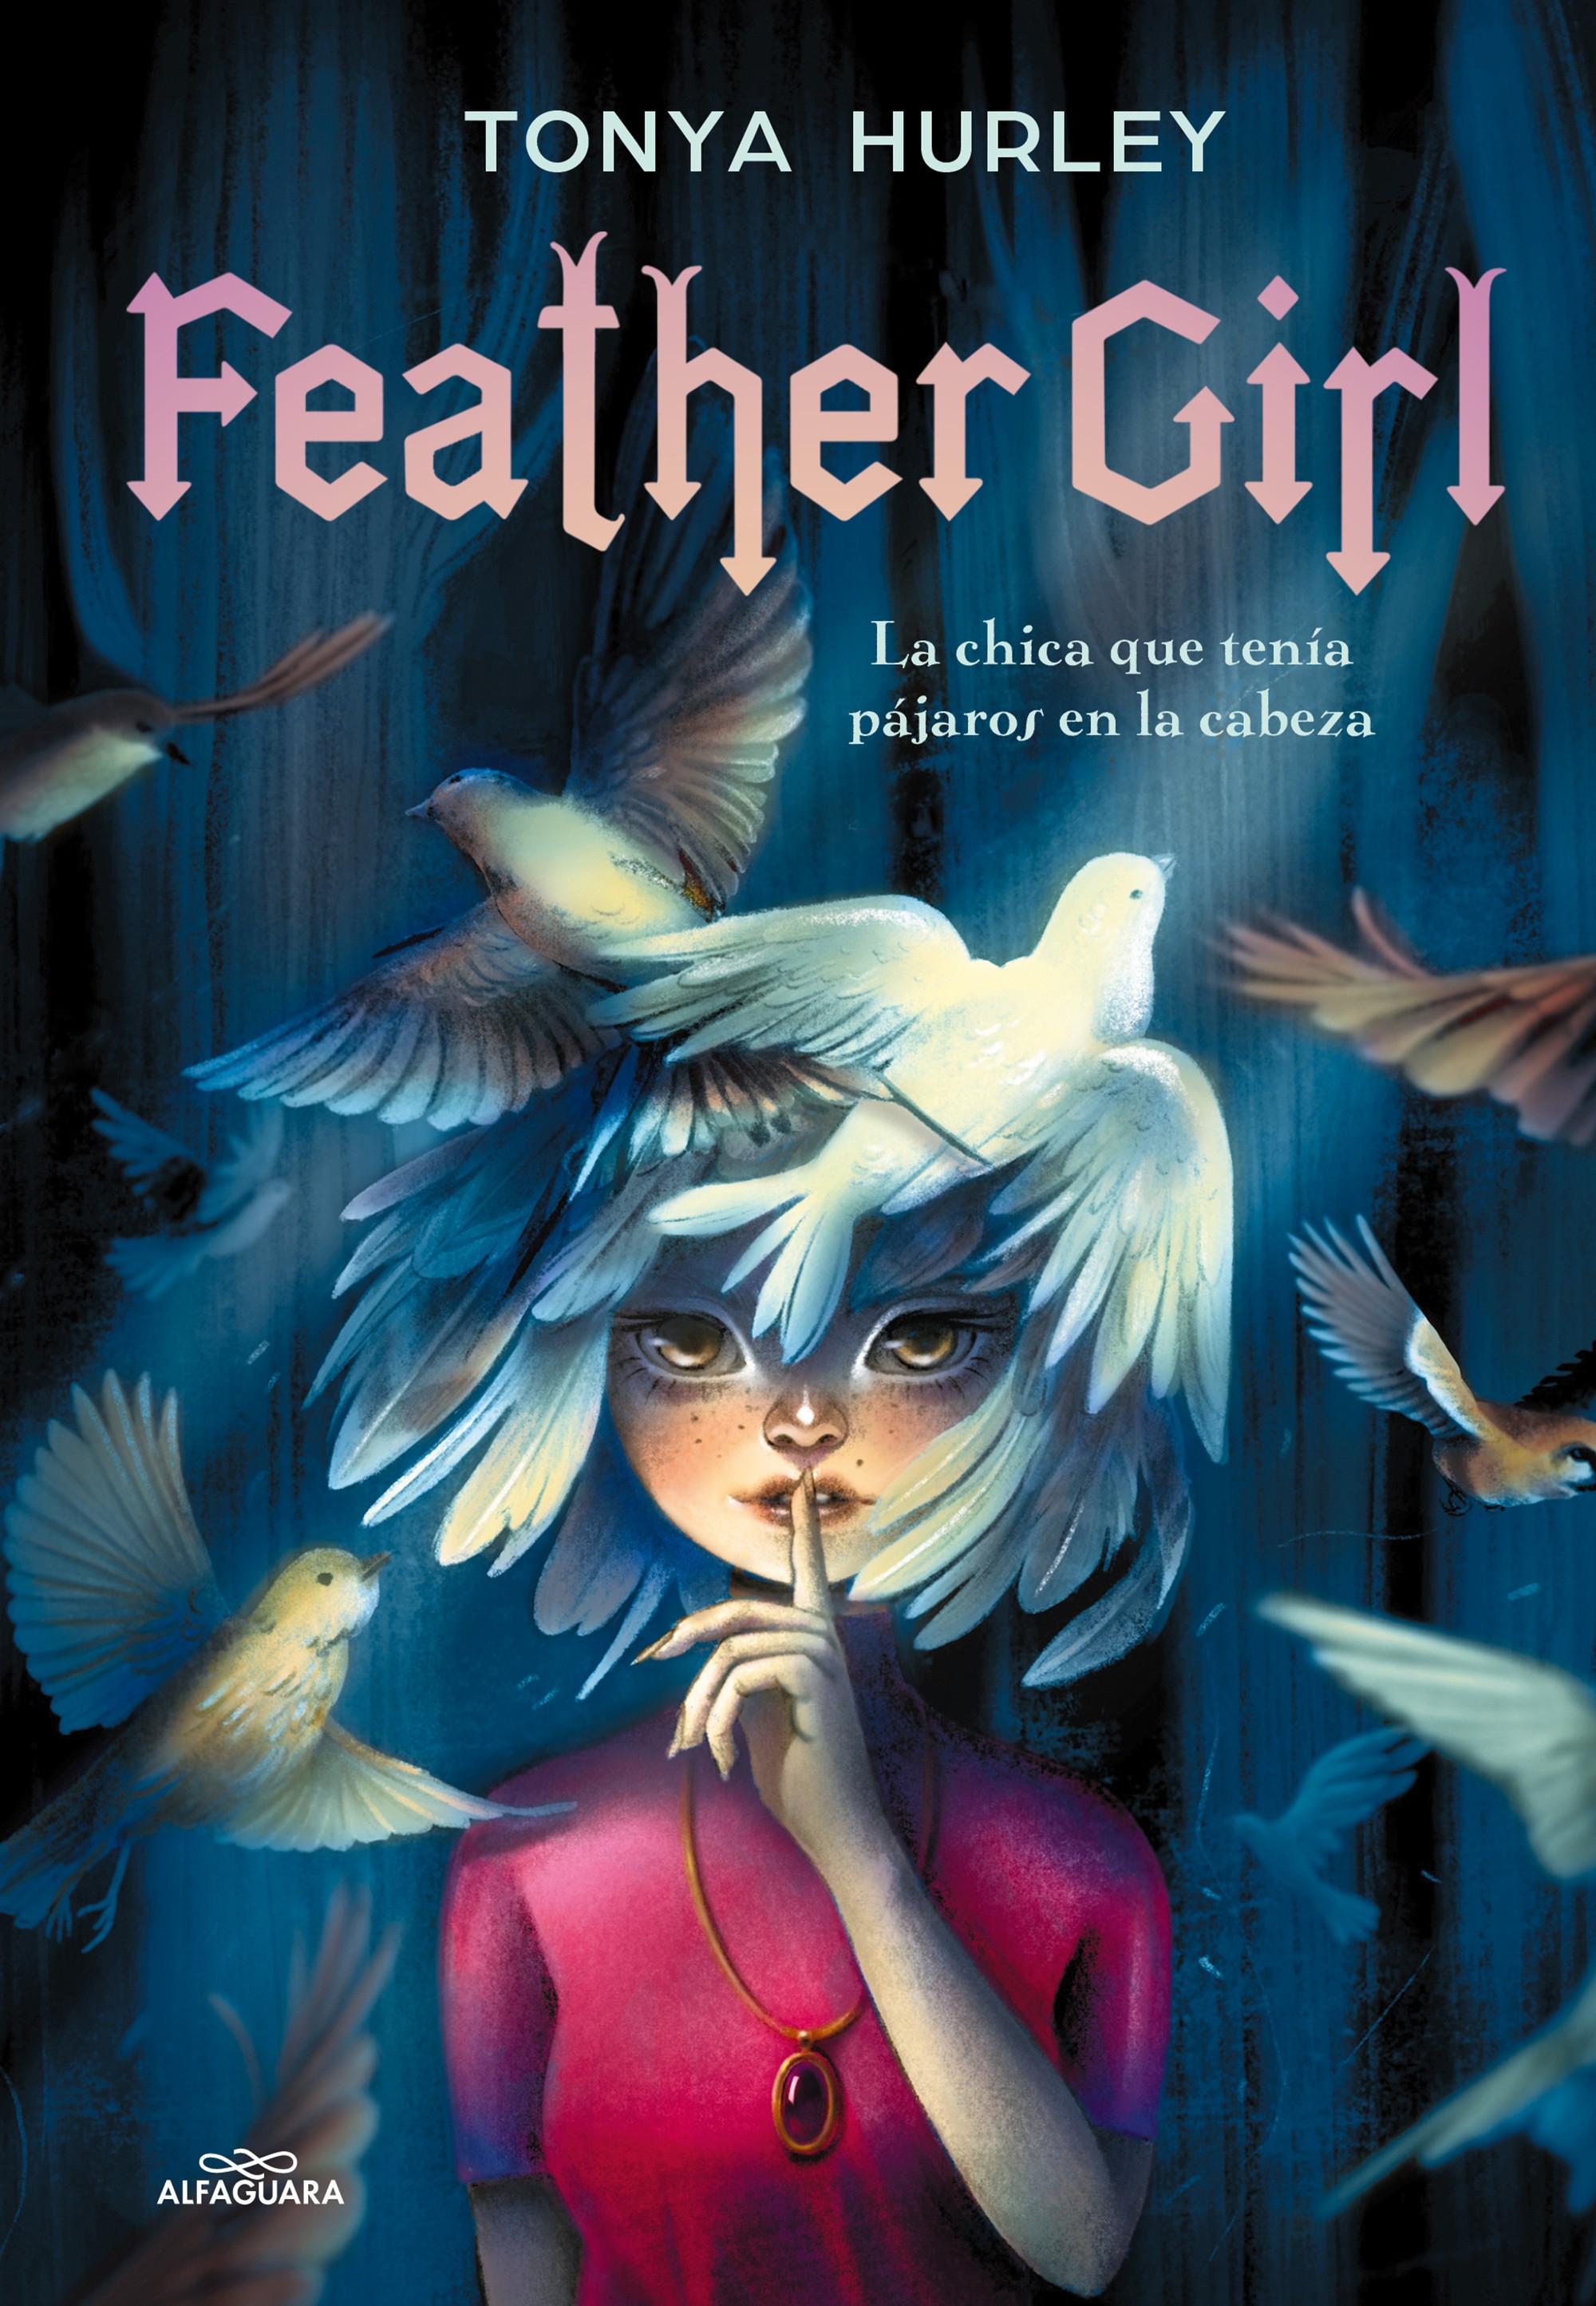 Feather Girl "La chica que tenía pájaros en la cabeza"